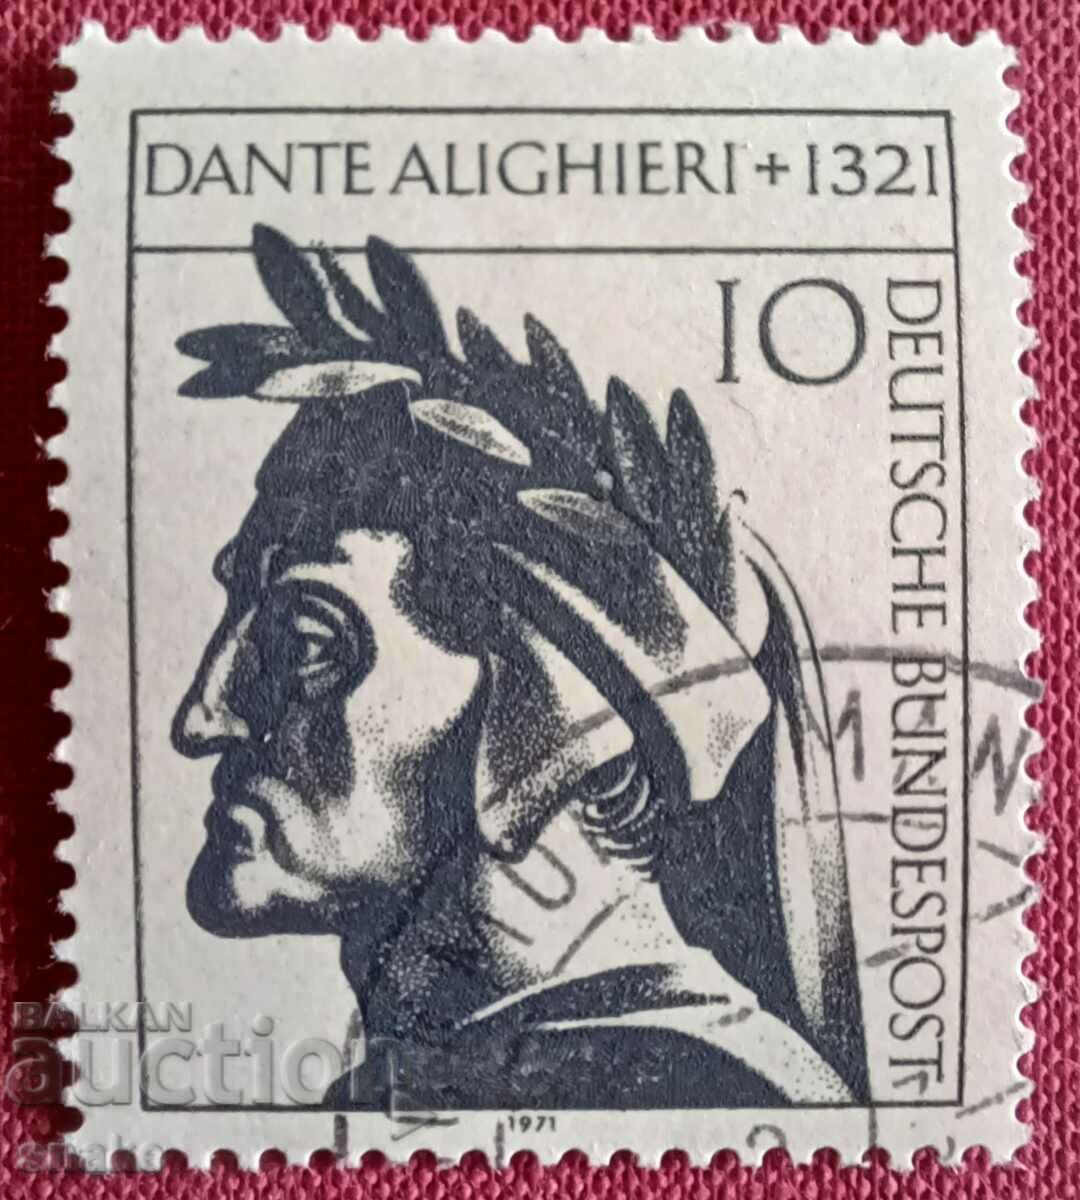 Germany 1971 Dante Alleghieri